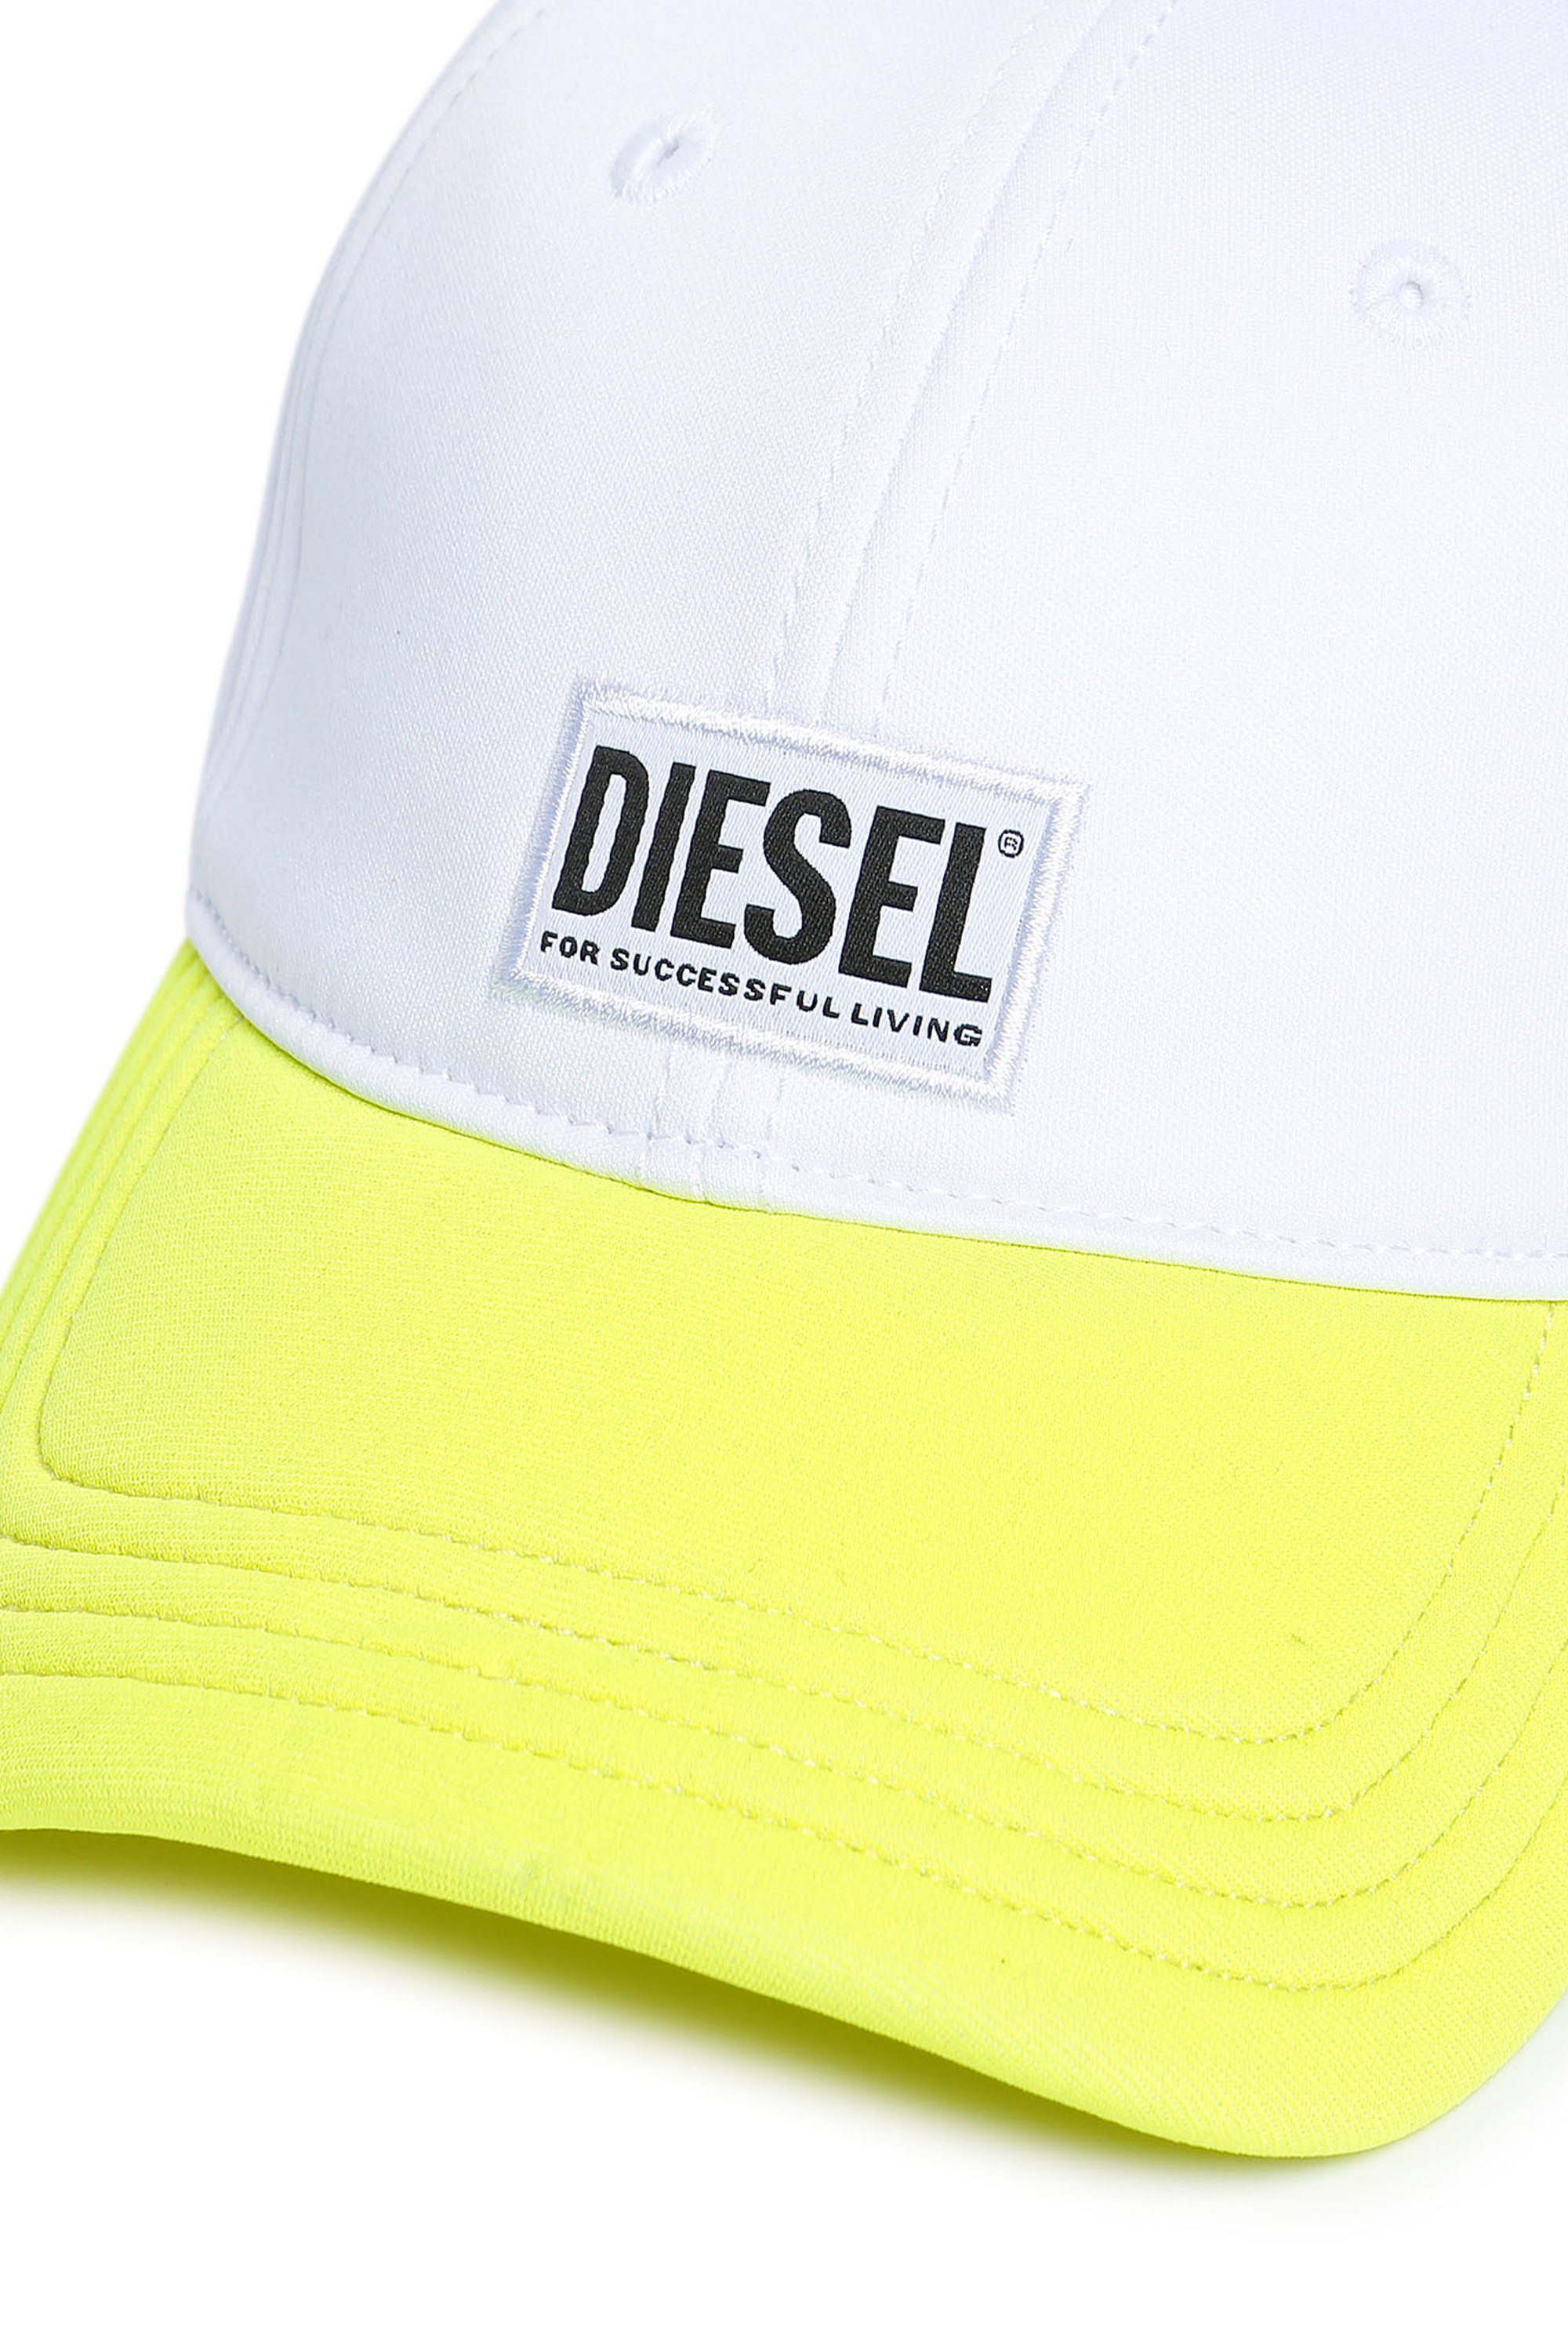 Diesel - FDURBO, Blanc/Jaune - Image 3